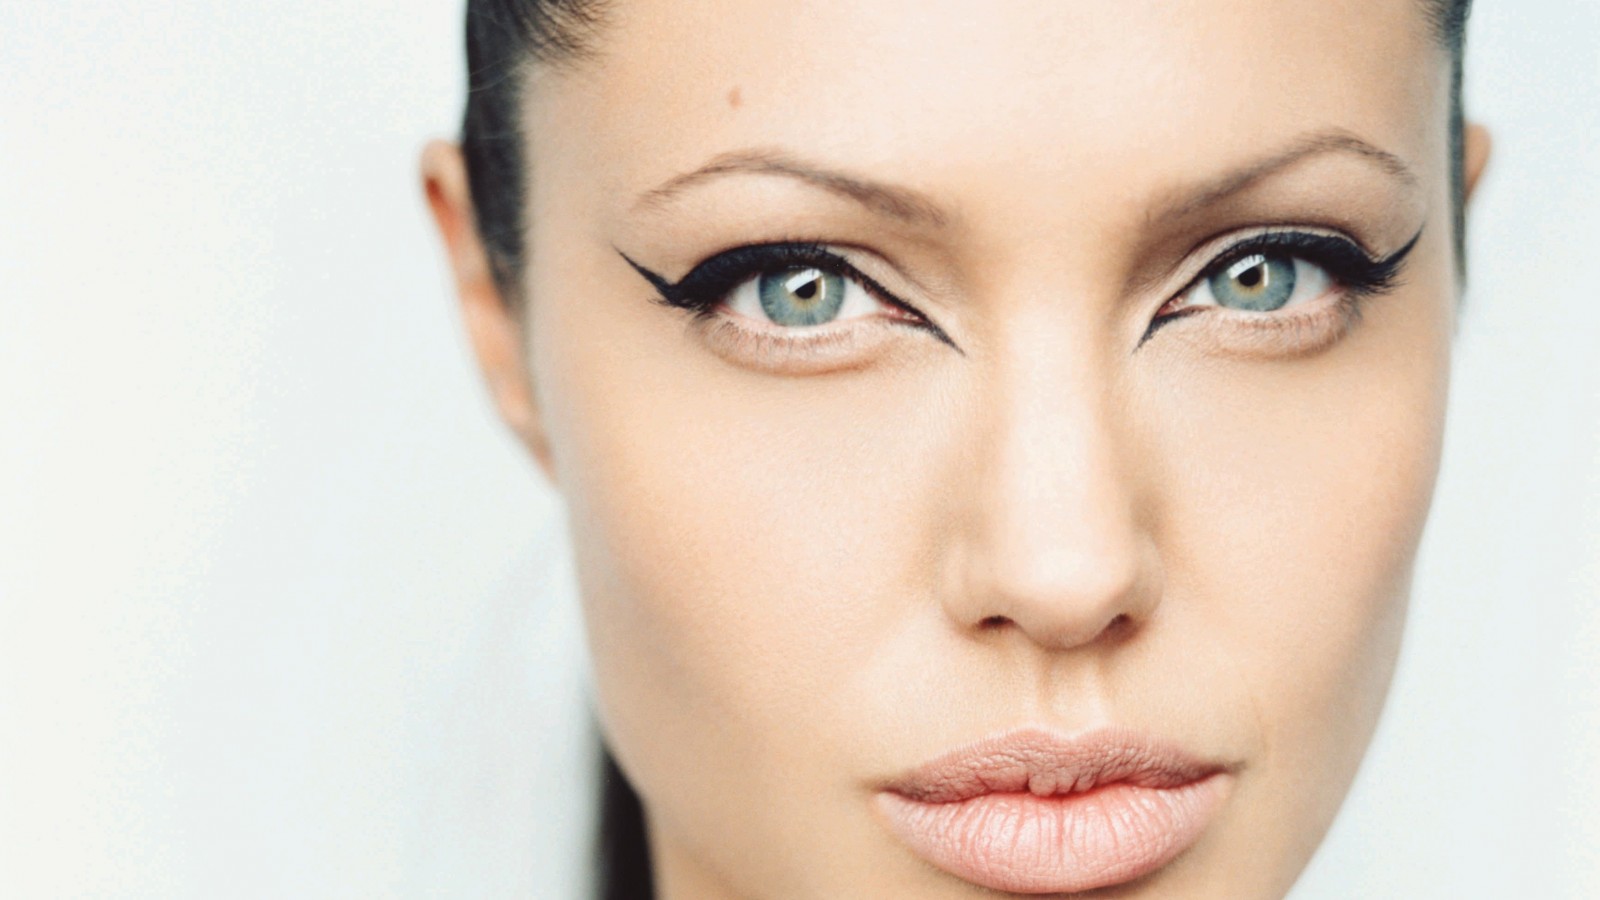 Angelina Jolie Wallpaper for Desktop 1600x900